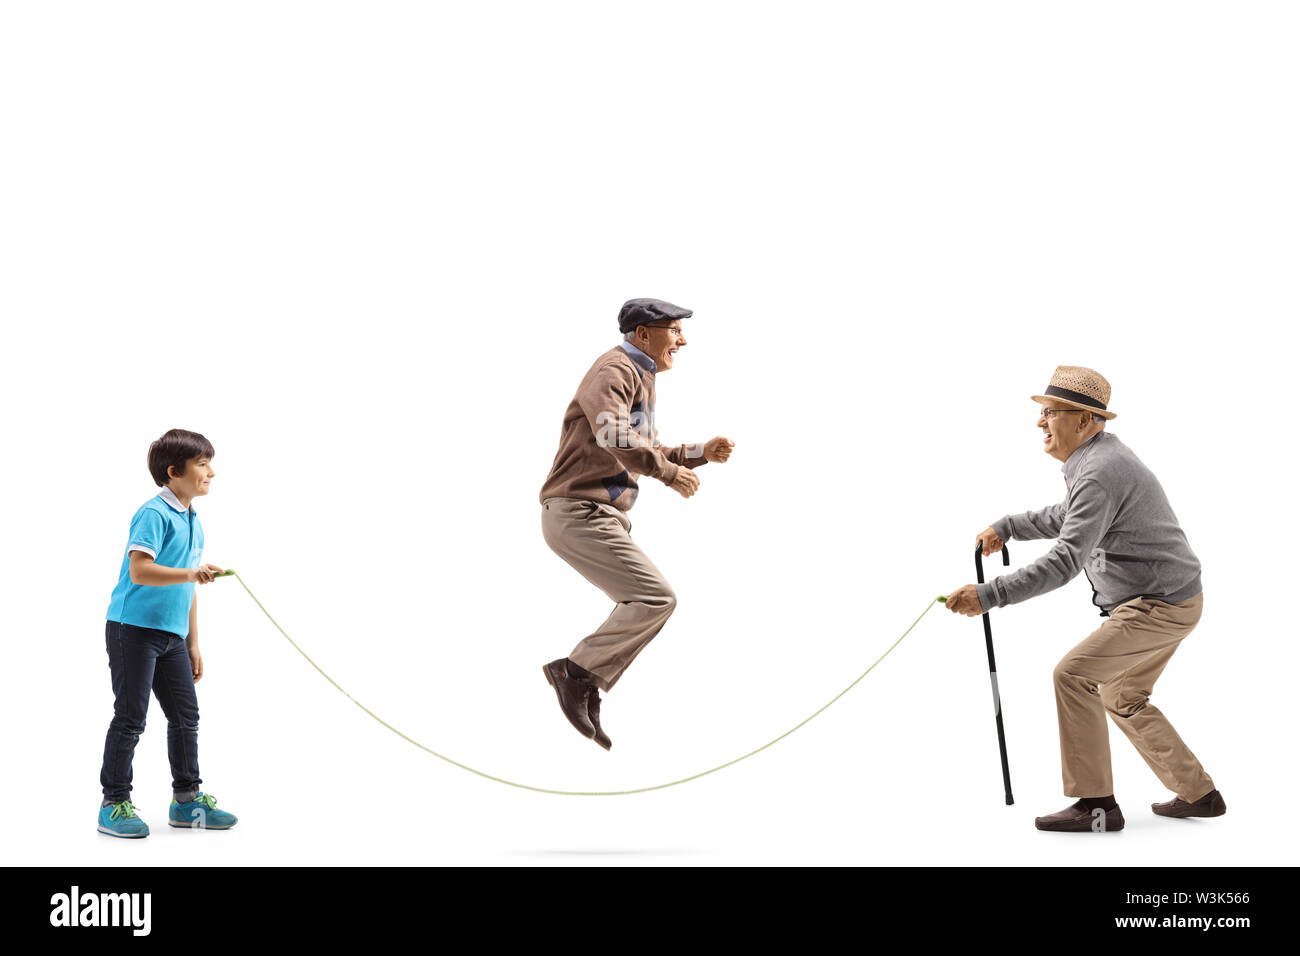 Lunghezza piena ripresa di profilo di un uomo anziano e un ragazzo in possesso di una corda e un uomo anziano saltando isolati su sfondo bianco Foto Stock